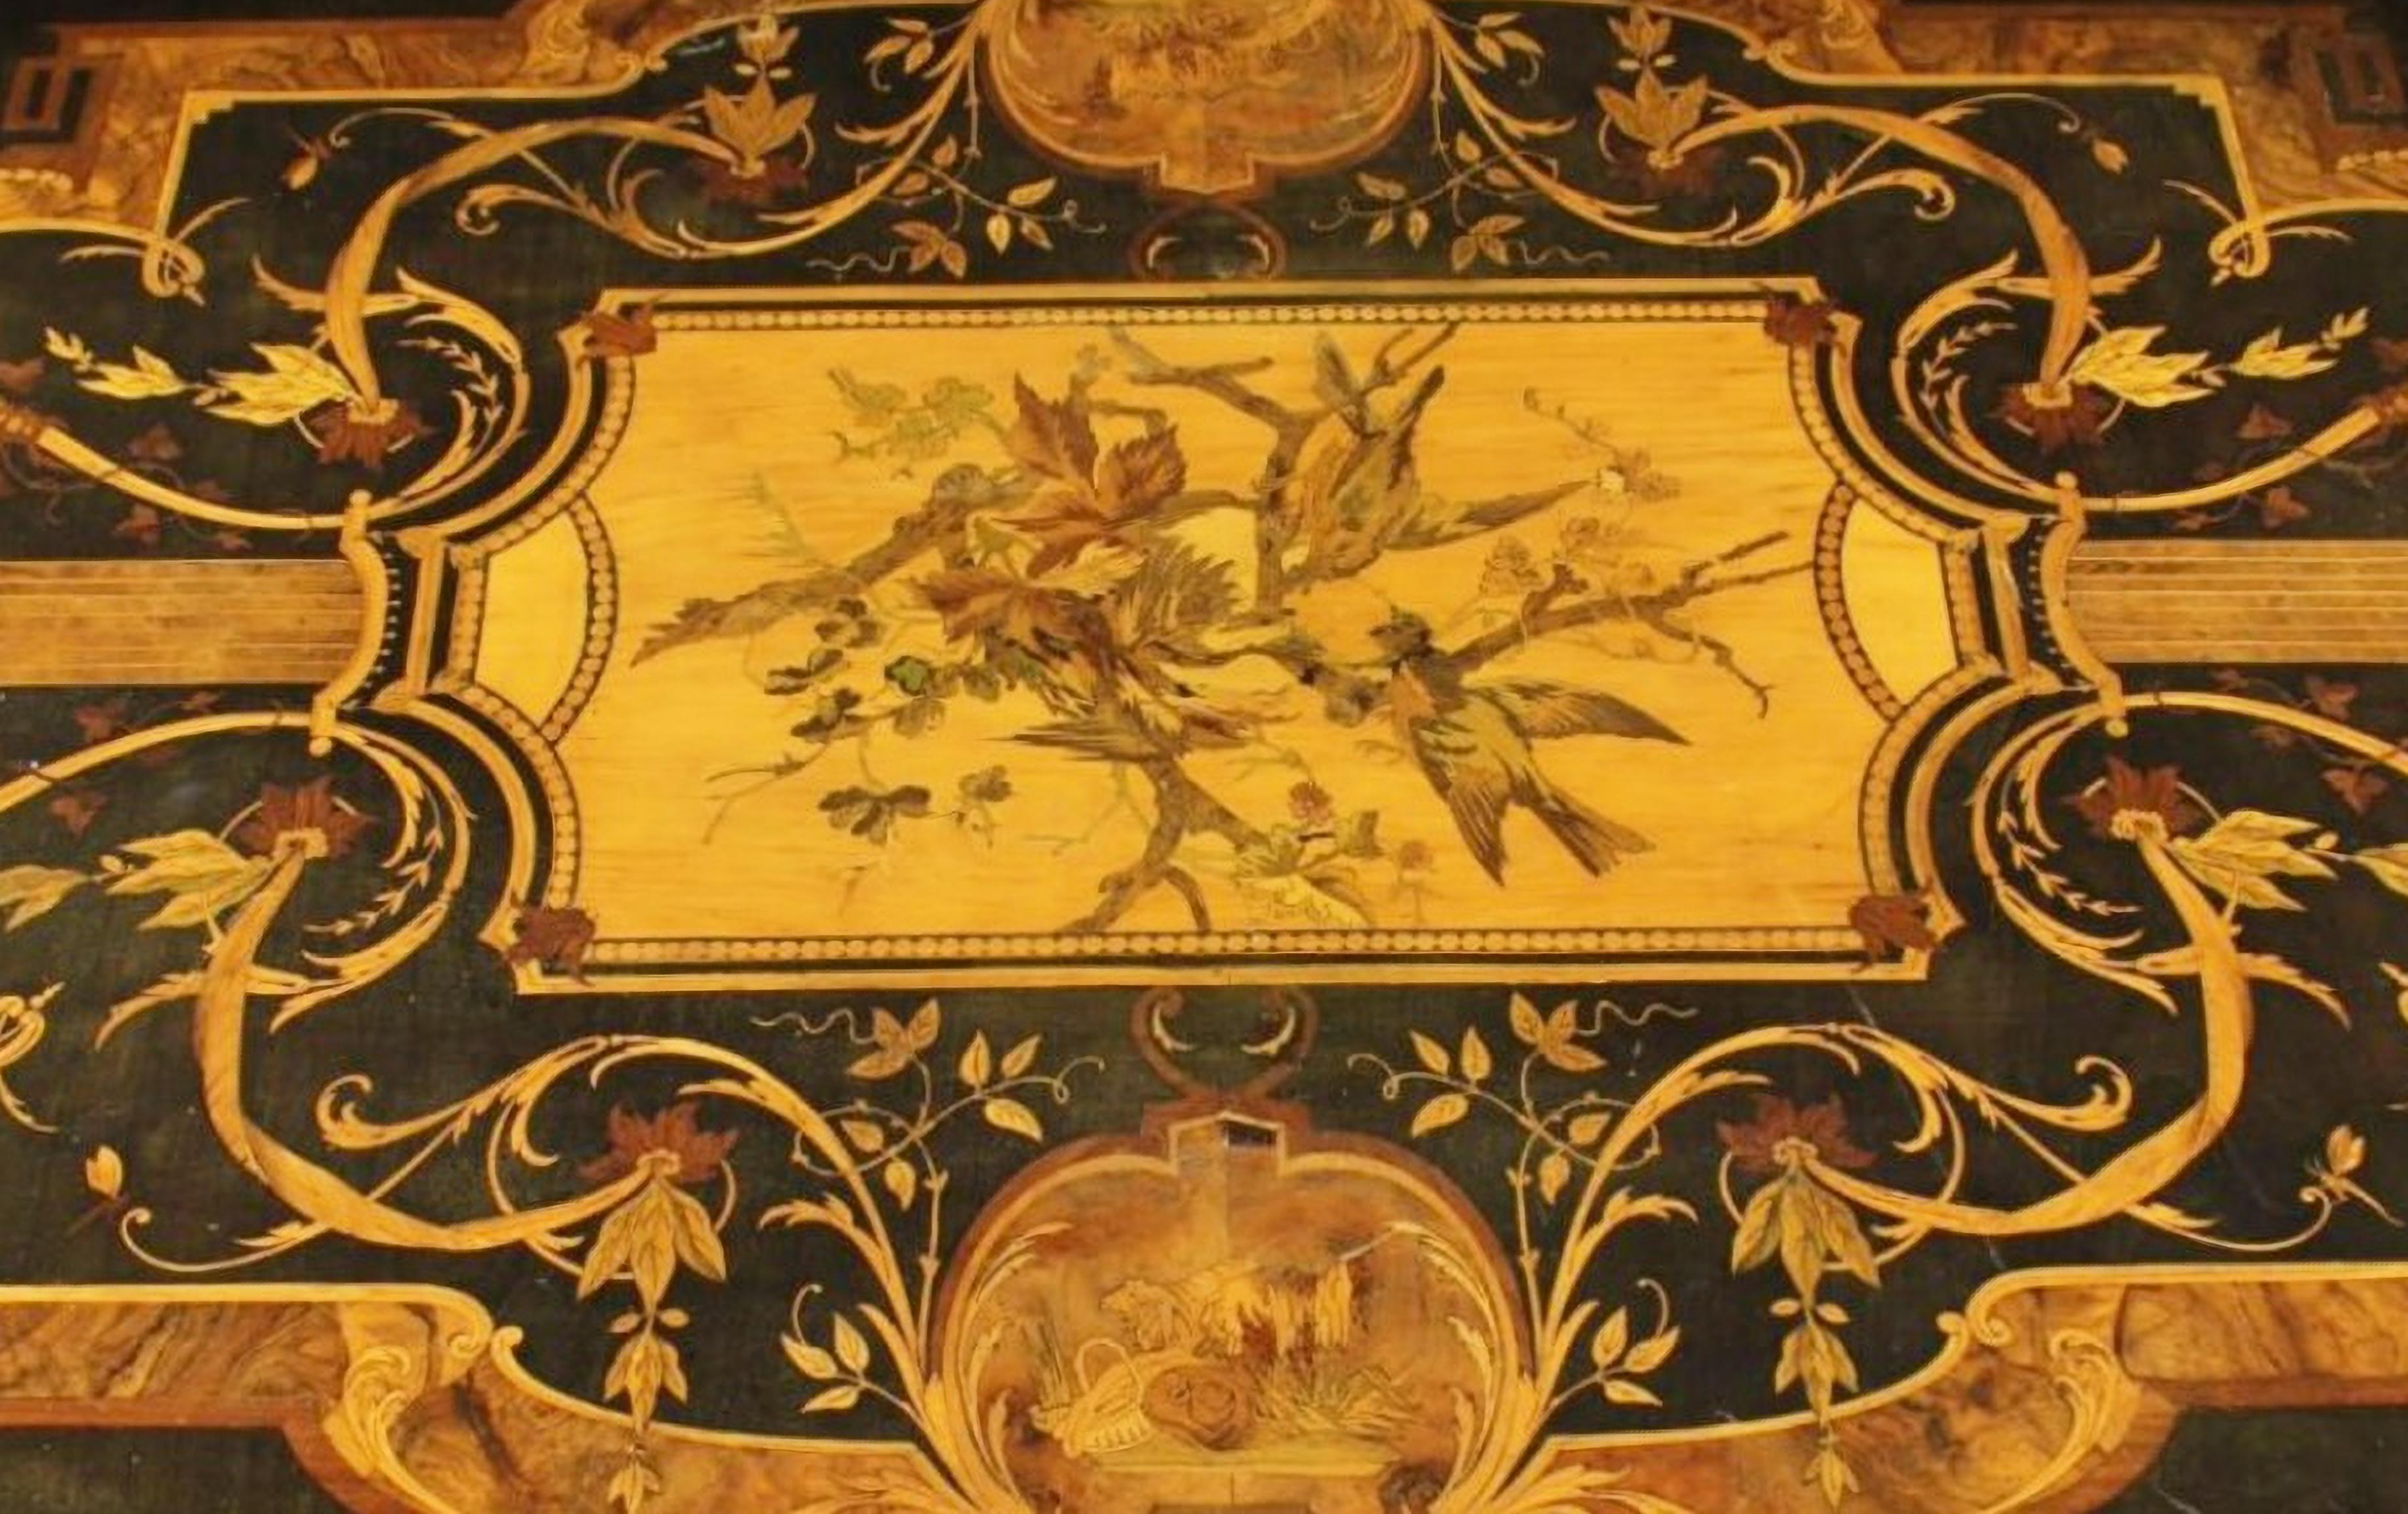 Elegance et préciosité de la table centrale NAPOLEON III 19ème siècle

en bois ébonisé richement incrusté de diverses essences de bois et de laiton avec des motifs floraux à l'intérieur d'une réserve d'oiseaux sur les branches, enrichi